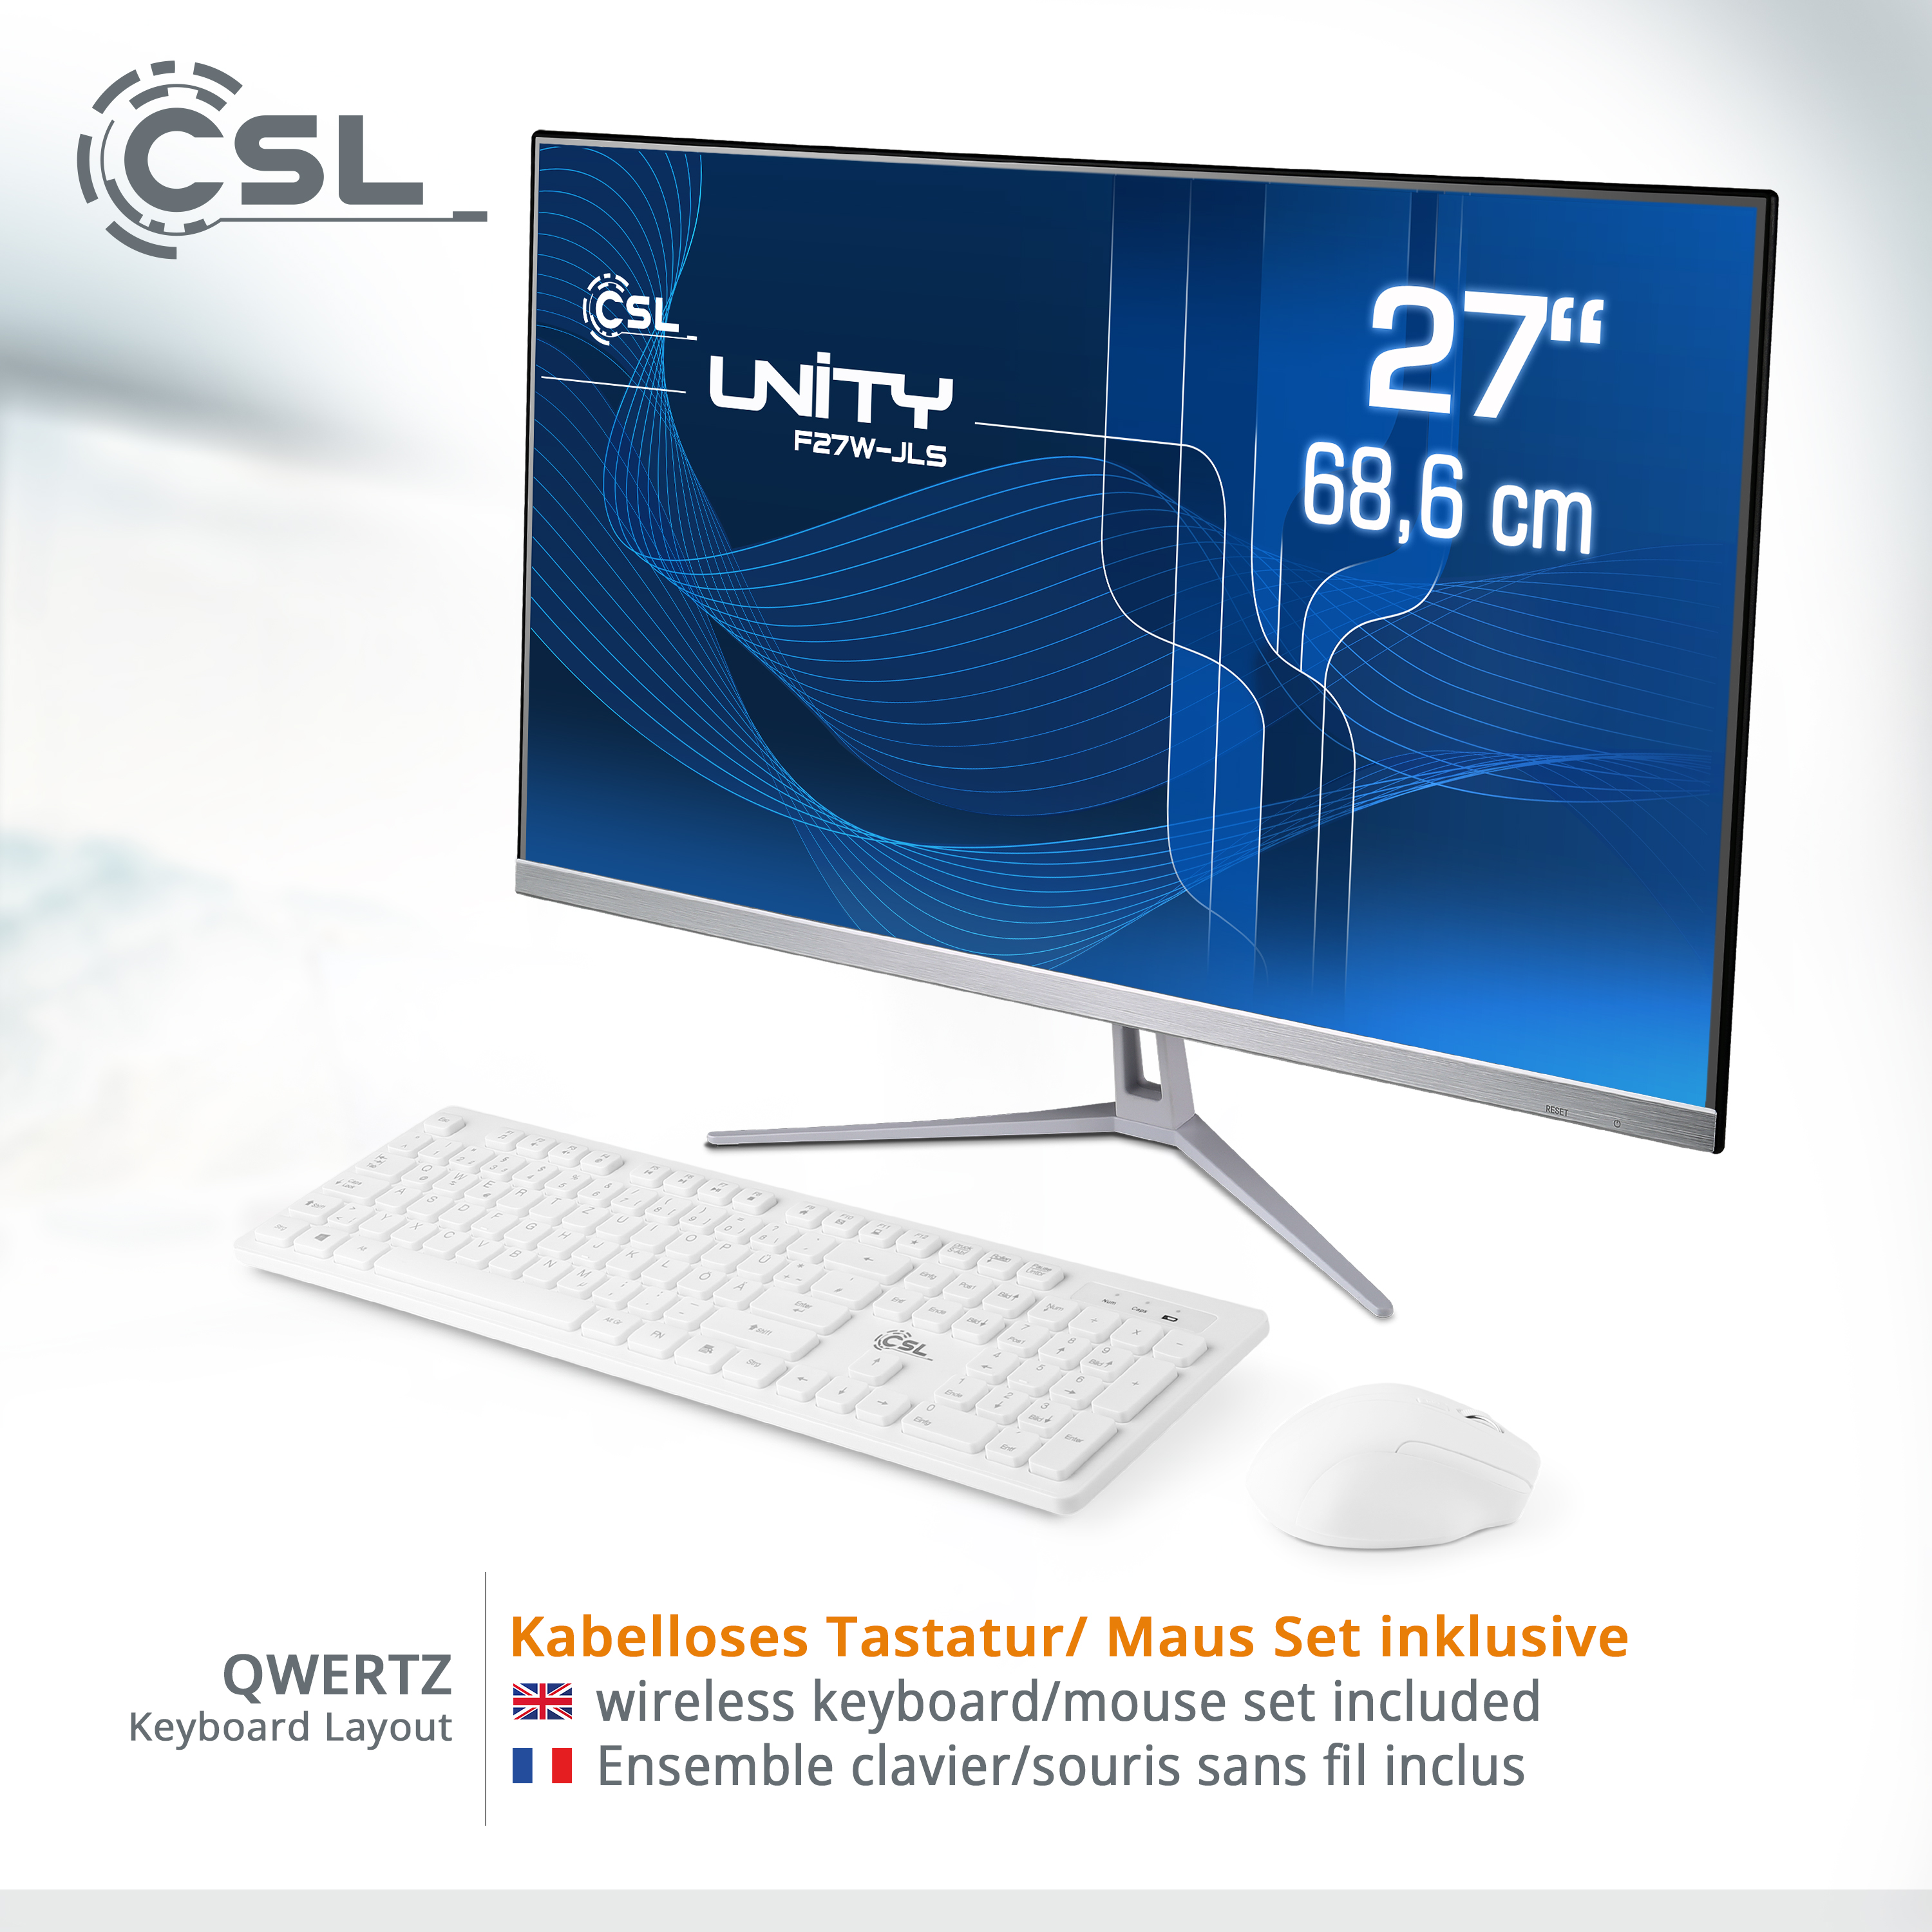 CSL Unity F27W-JLS Pentium Display, GB RAM SSD, weiß GB 1000 All-in-One-PC 16 16 UHD mit 11 / Intel® Zoll GB / Pro, GB / 27 RAM, 1000 Graphics, Win